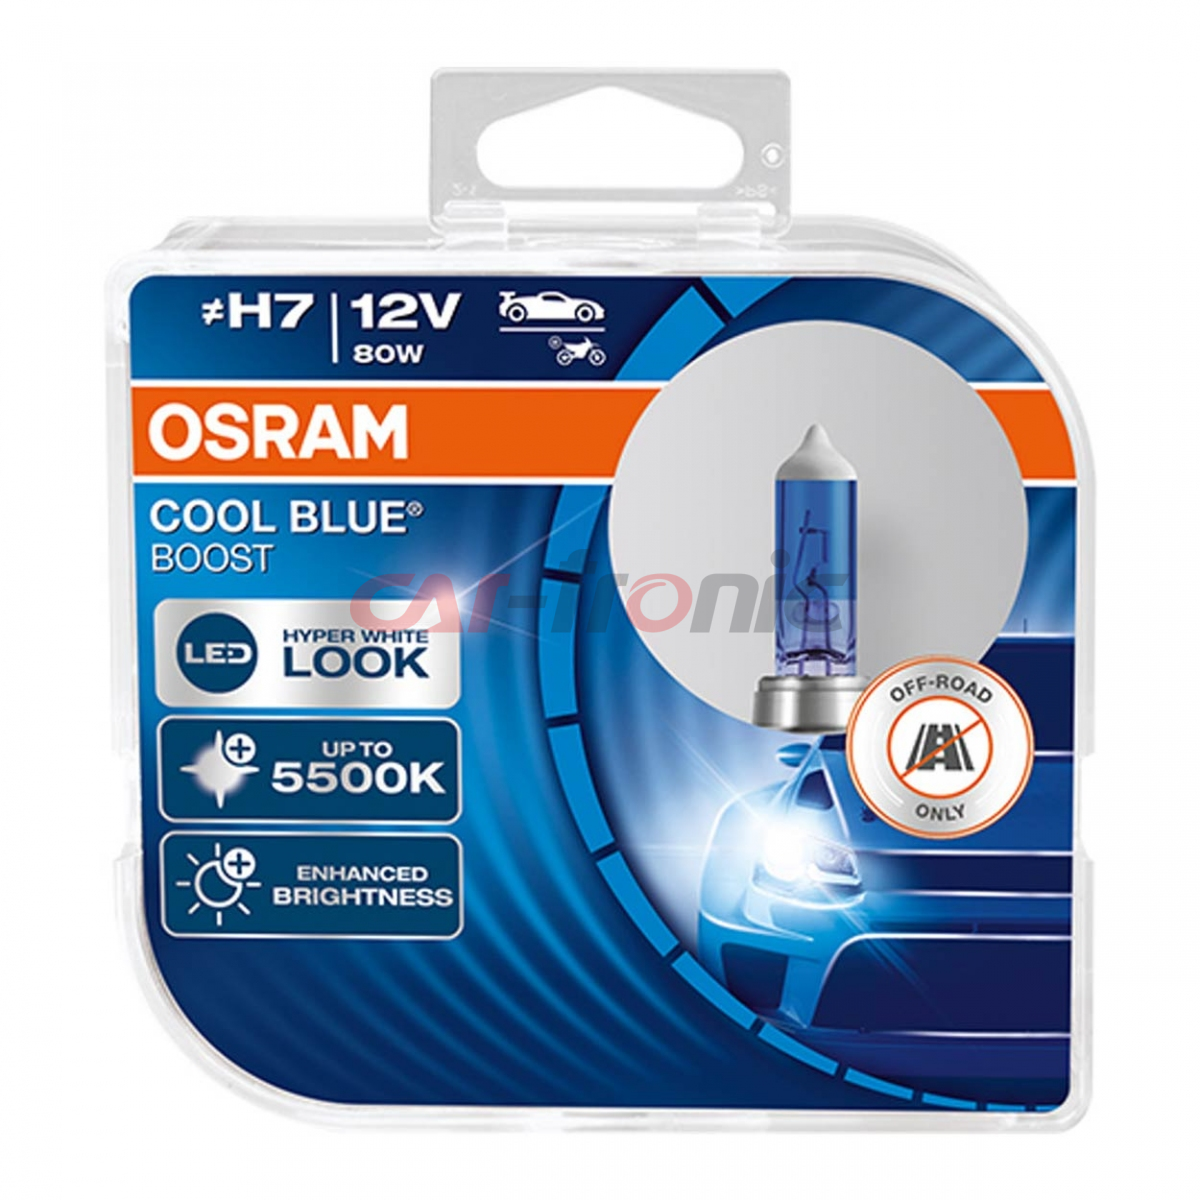 Żarówka halogenowa Osram H7 12V 80W PX26d Cool Blue Boost 5500K/ 2 szt.